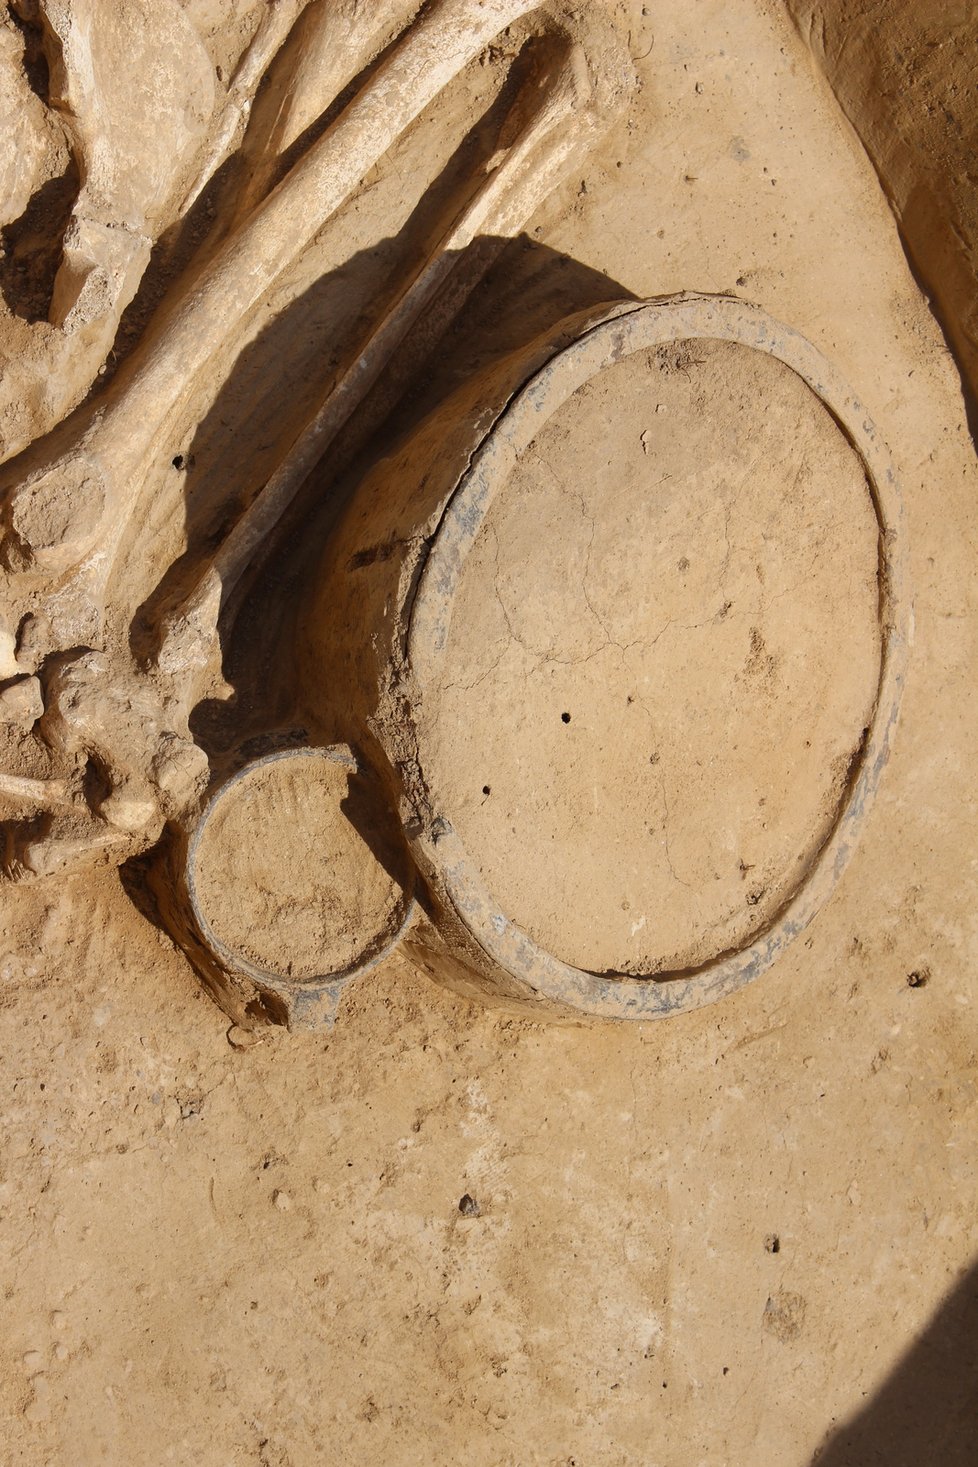 Archeologové našli u Holubic na Vyškovsku 23 hrobů z pozdní doby kamenné, jsou staré přibližně 4000 let. Byla u nich i typická keramika v podobě kultury zvoncovitých pohárů.